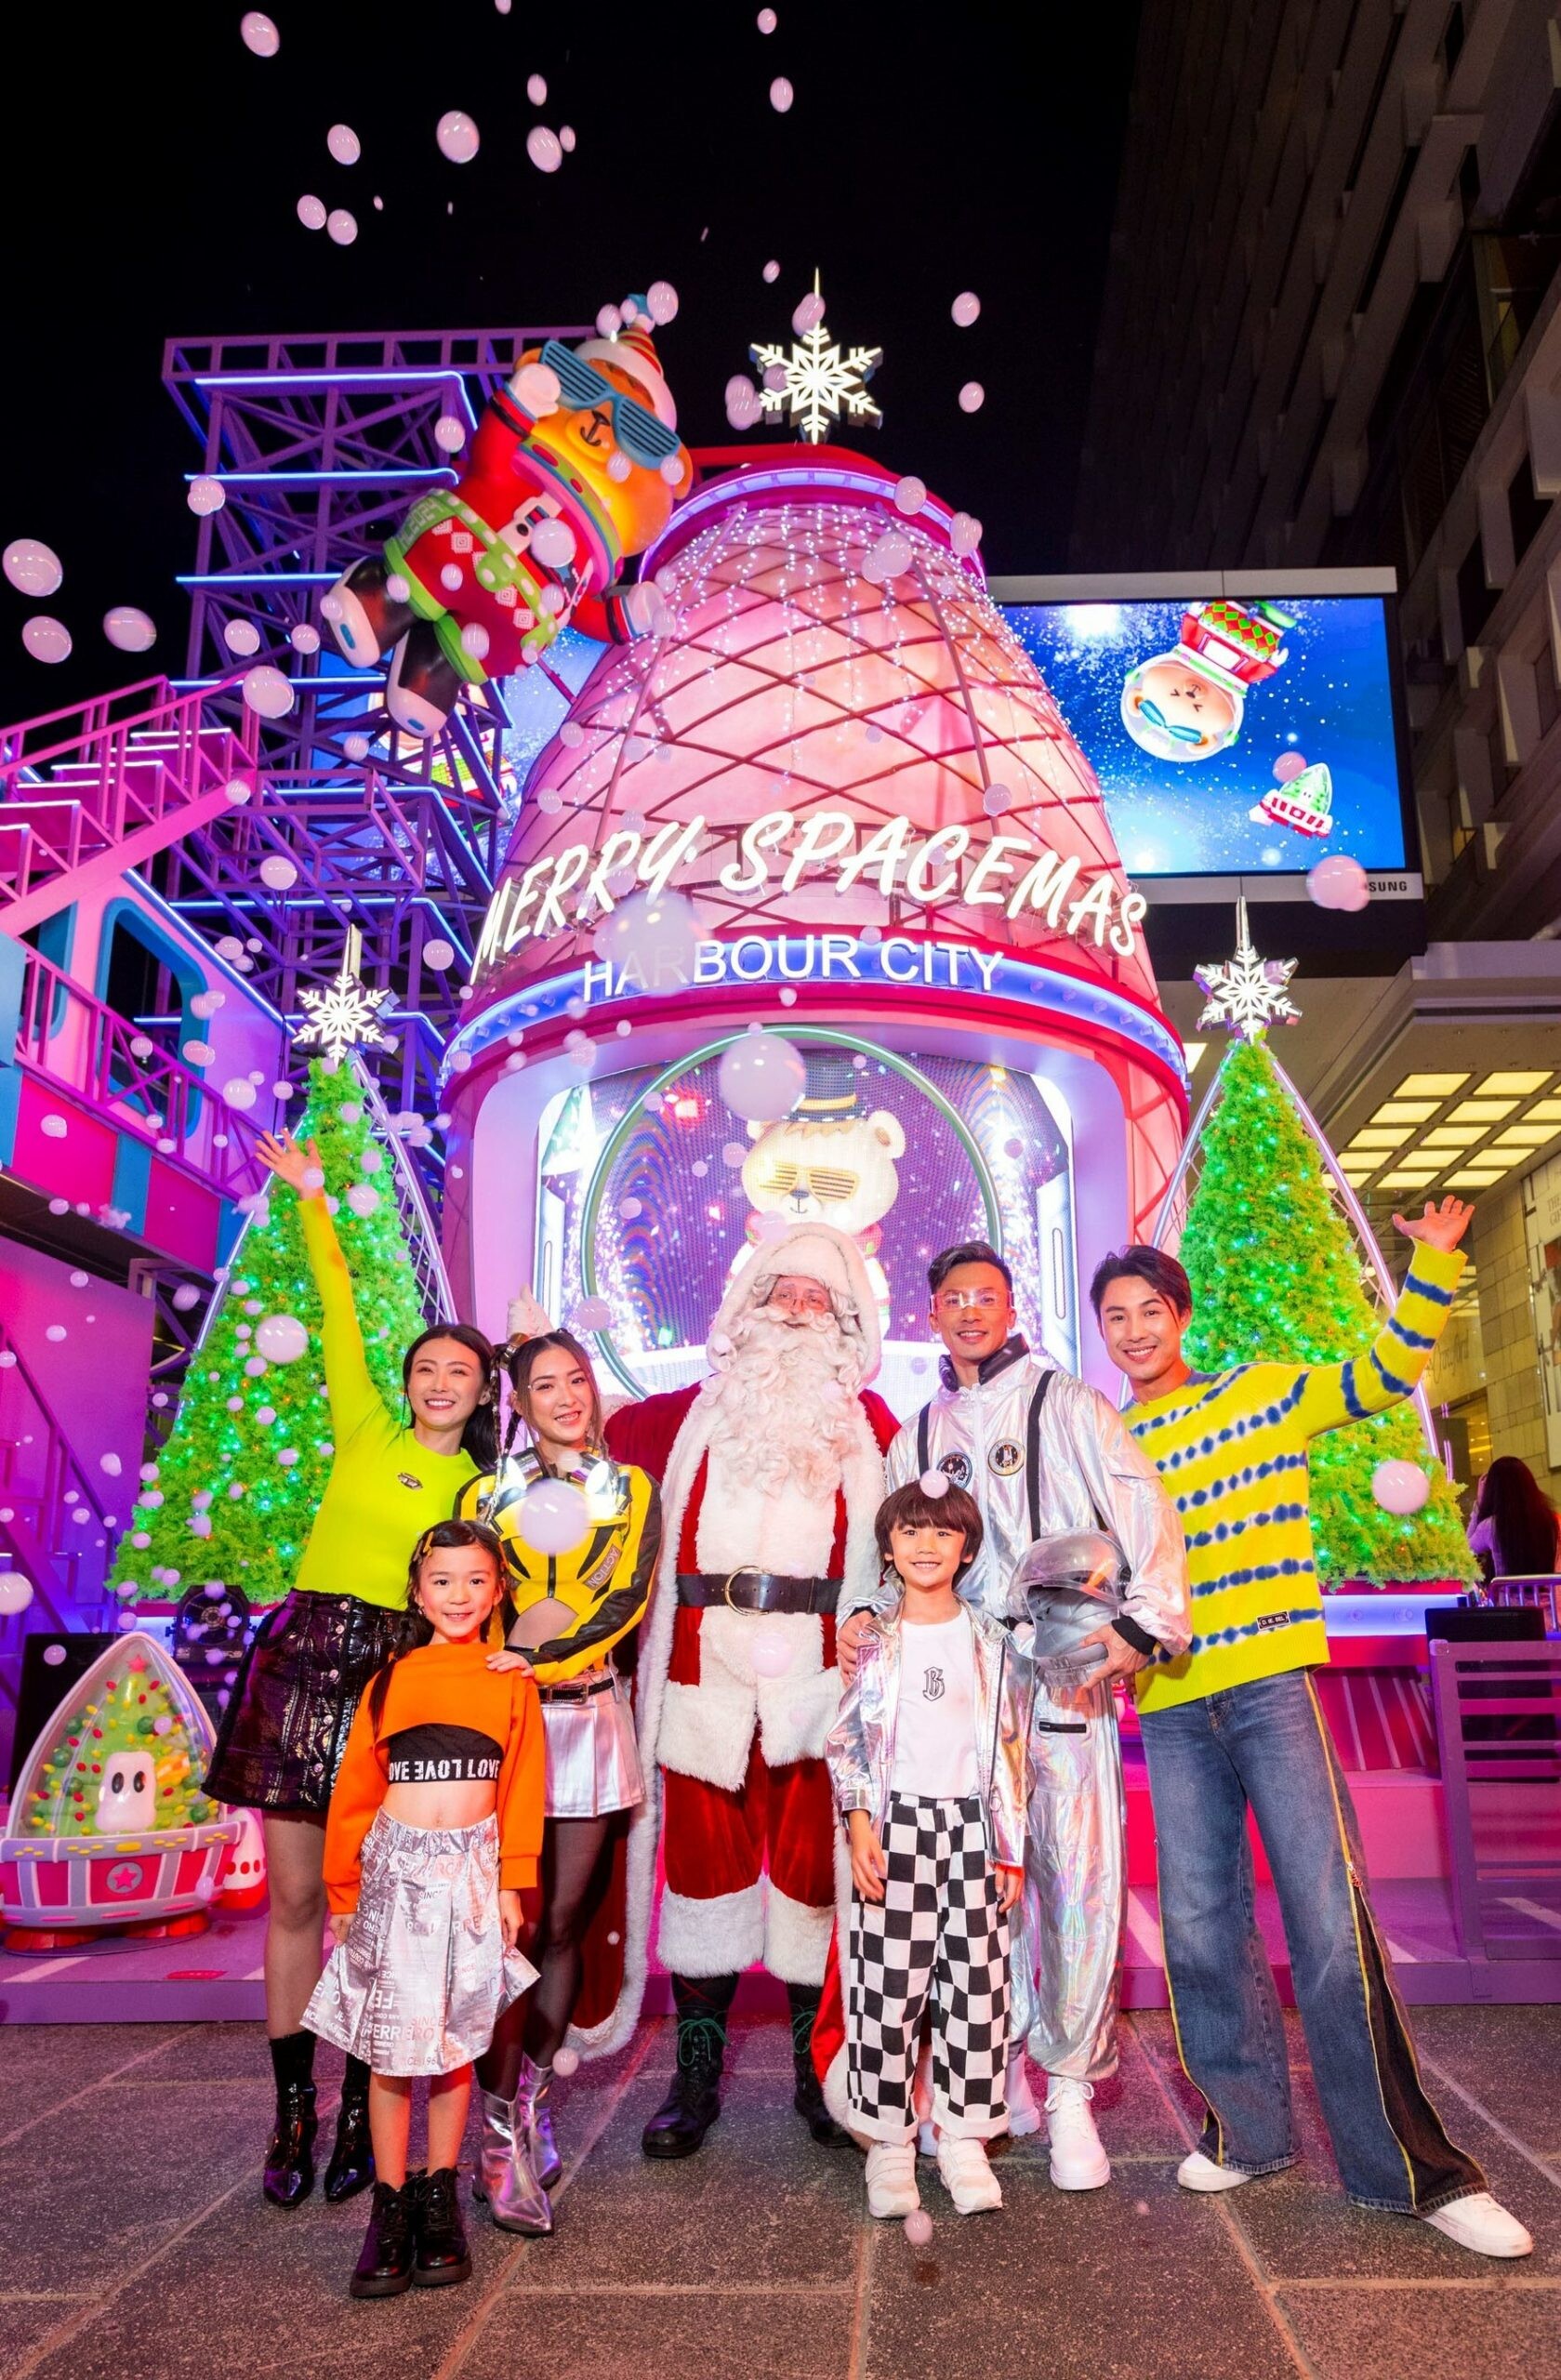 ห้างฮาร์เบอร์ ซิตี้ ในฮ่องกงจัดงานประดับไฟคริสต์มาส เปิดตัวธีม "Merry Spacemas" กลางแจ้ง